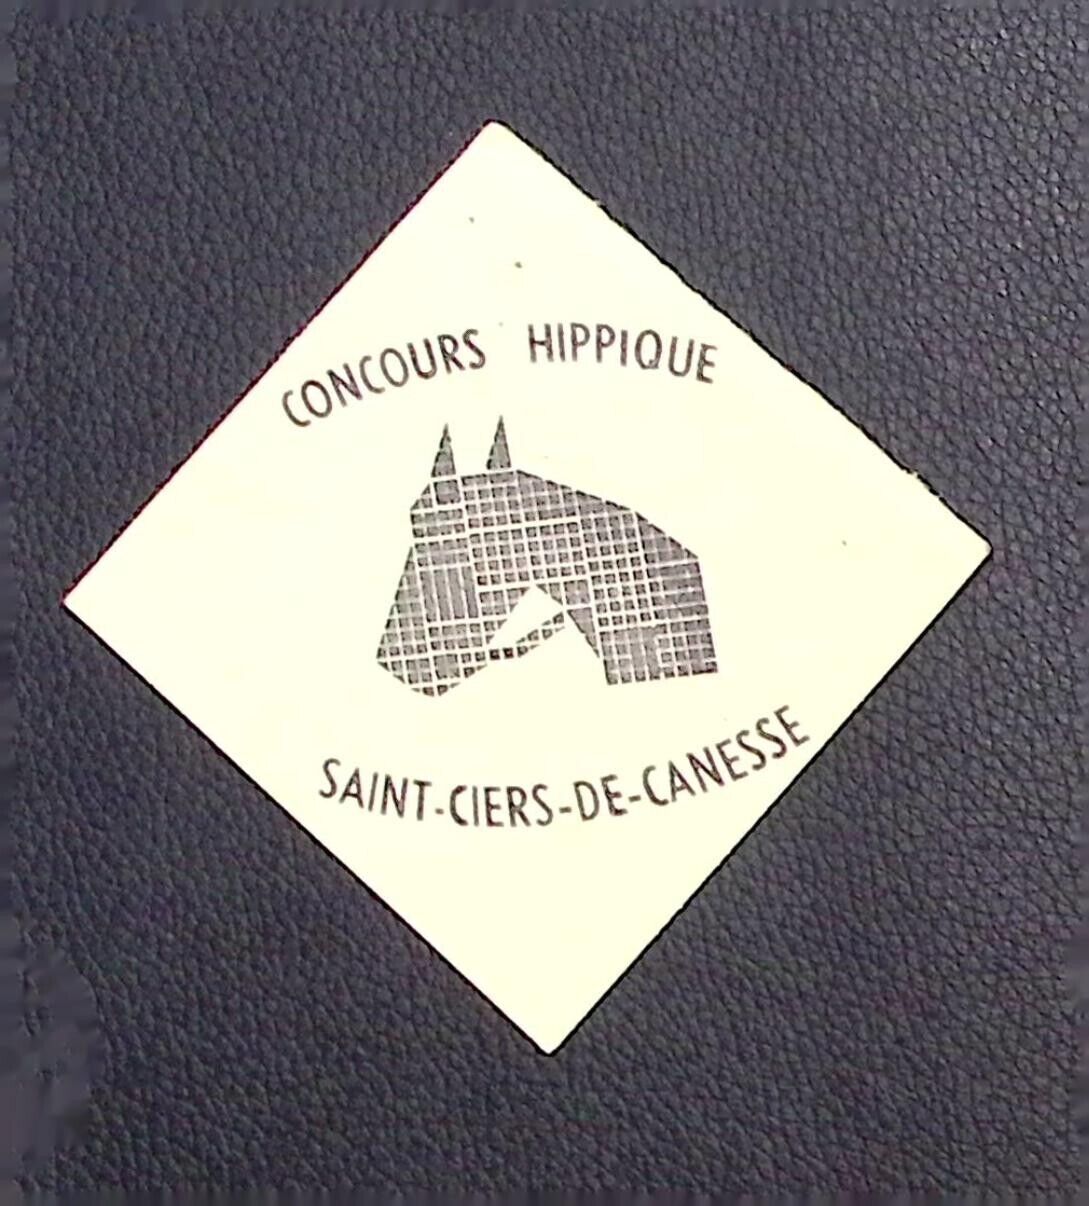 French Horse Contest Concours Hippique Saint Ciers de Canesse Paper Card